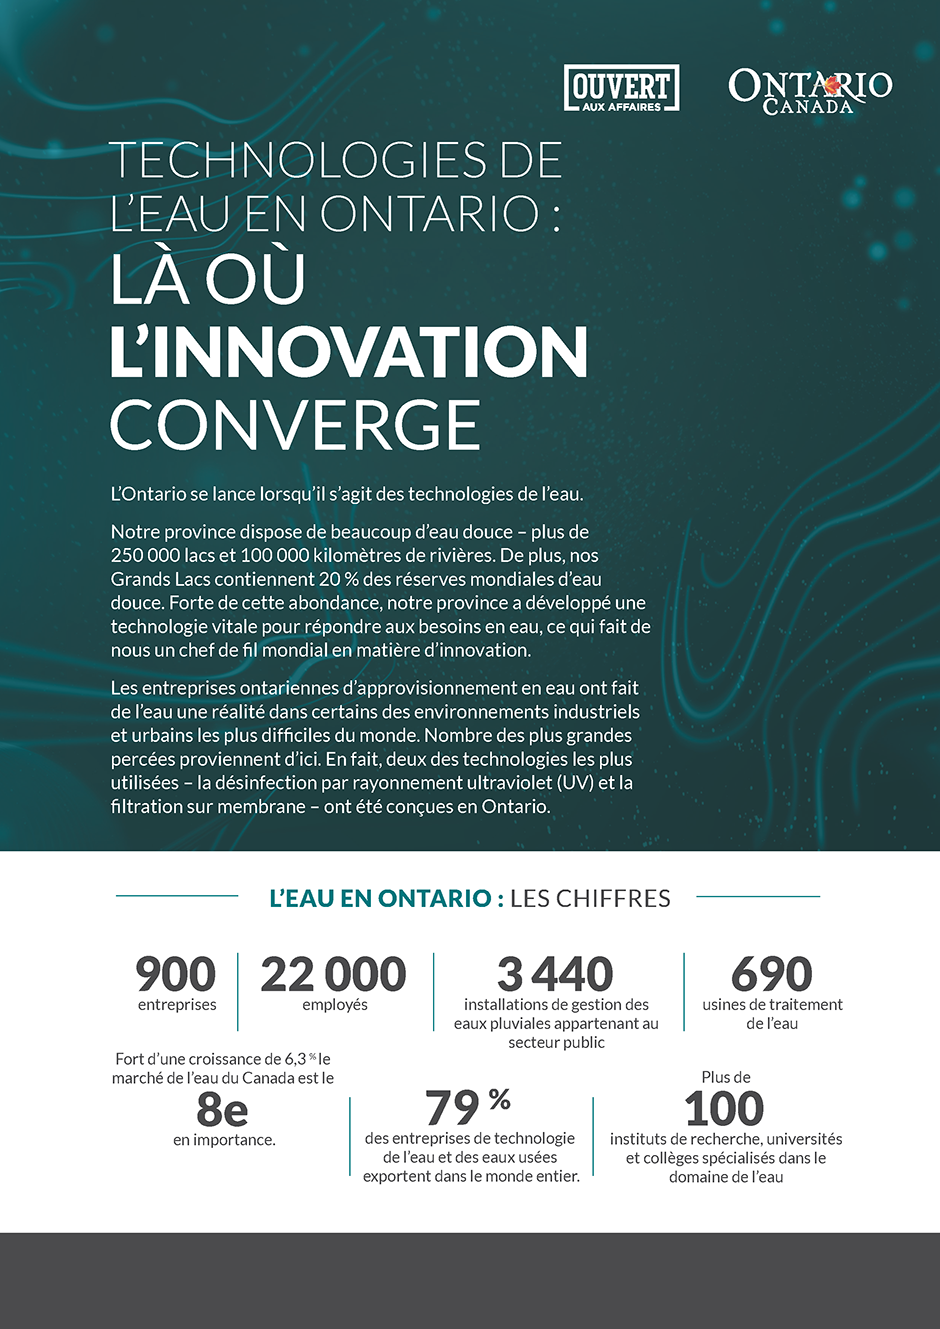 Technologies de l'eau en Ontario : Là où l'innovation converge